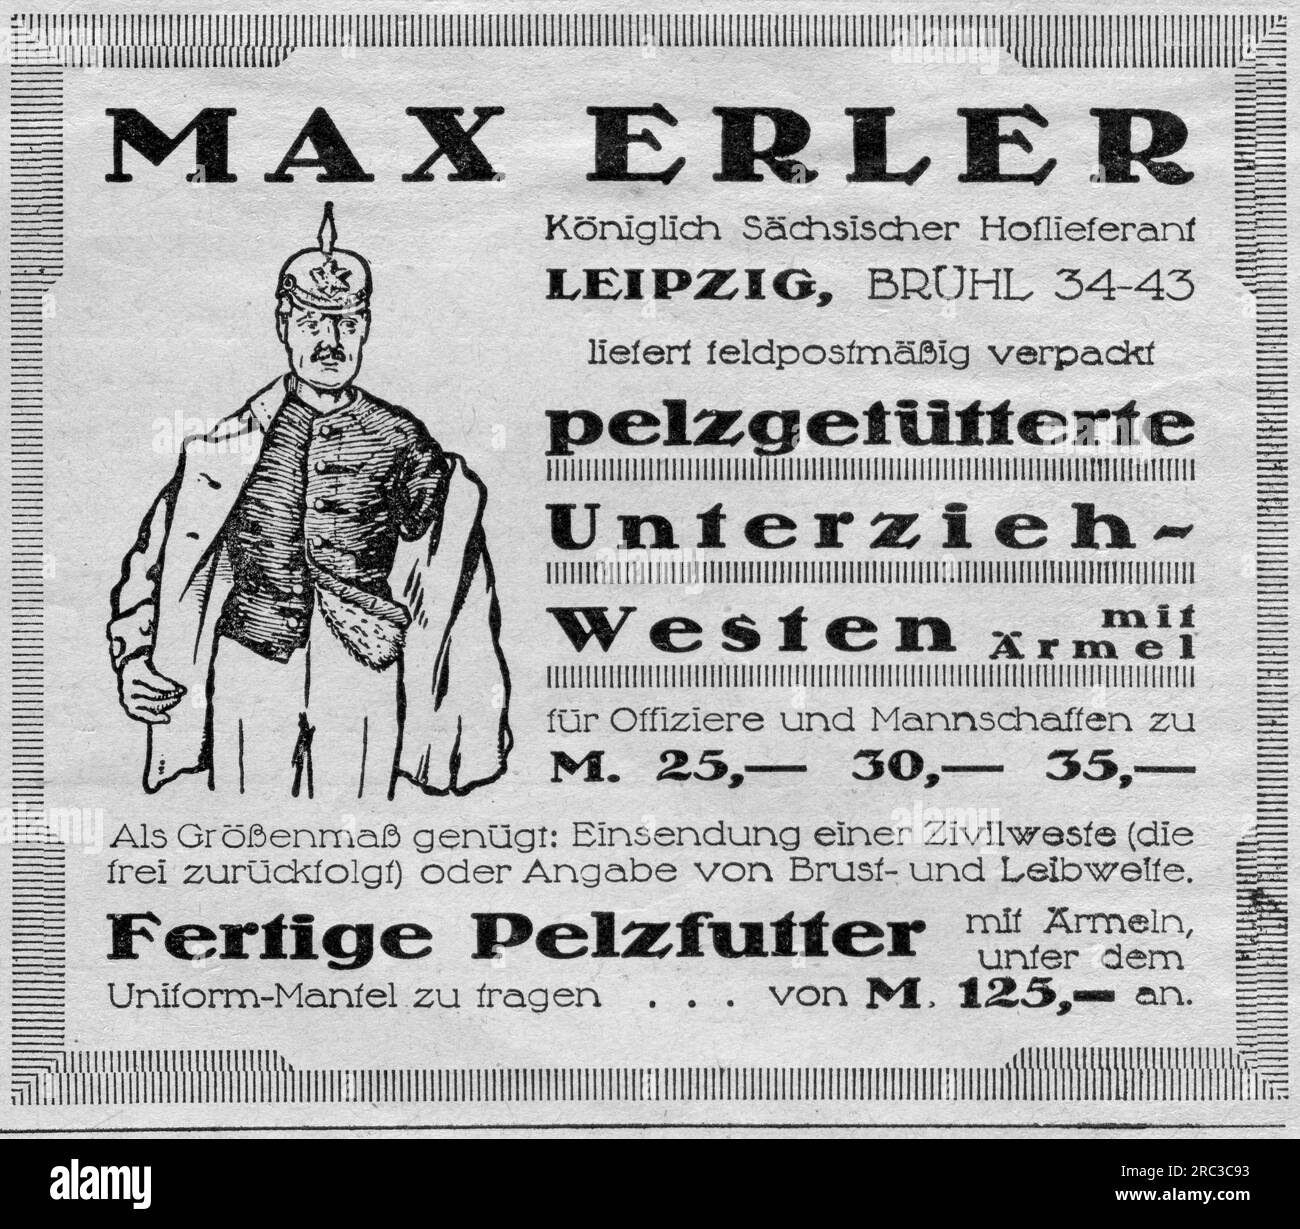 Publicité, doublée de fourrure sous les gilets, Max Erler, mandat de nomination Royal Saxon, Leipzig, INFORMATION-AUTORISATION-DROITS-SUPPLÉMENTAIRE-NON-DISPONIBLE Banque D'Images